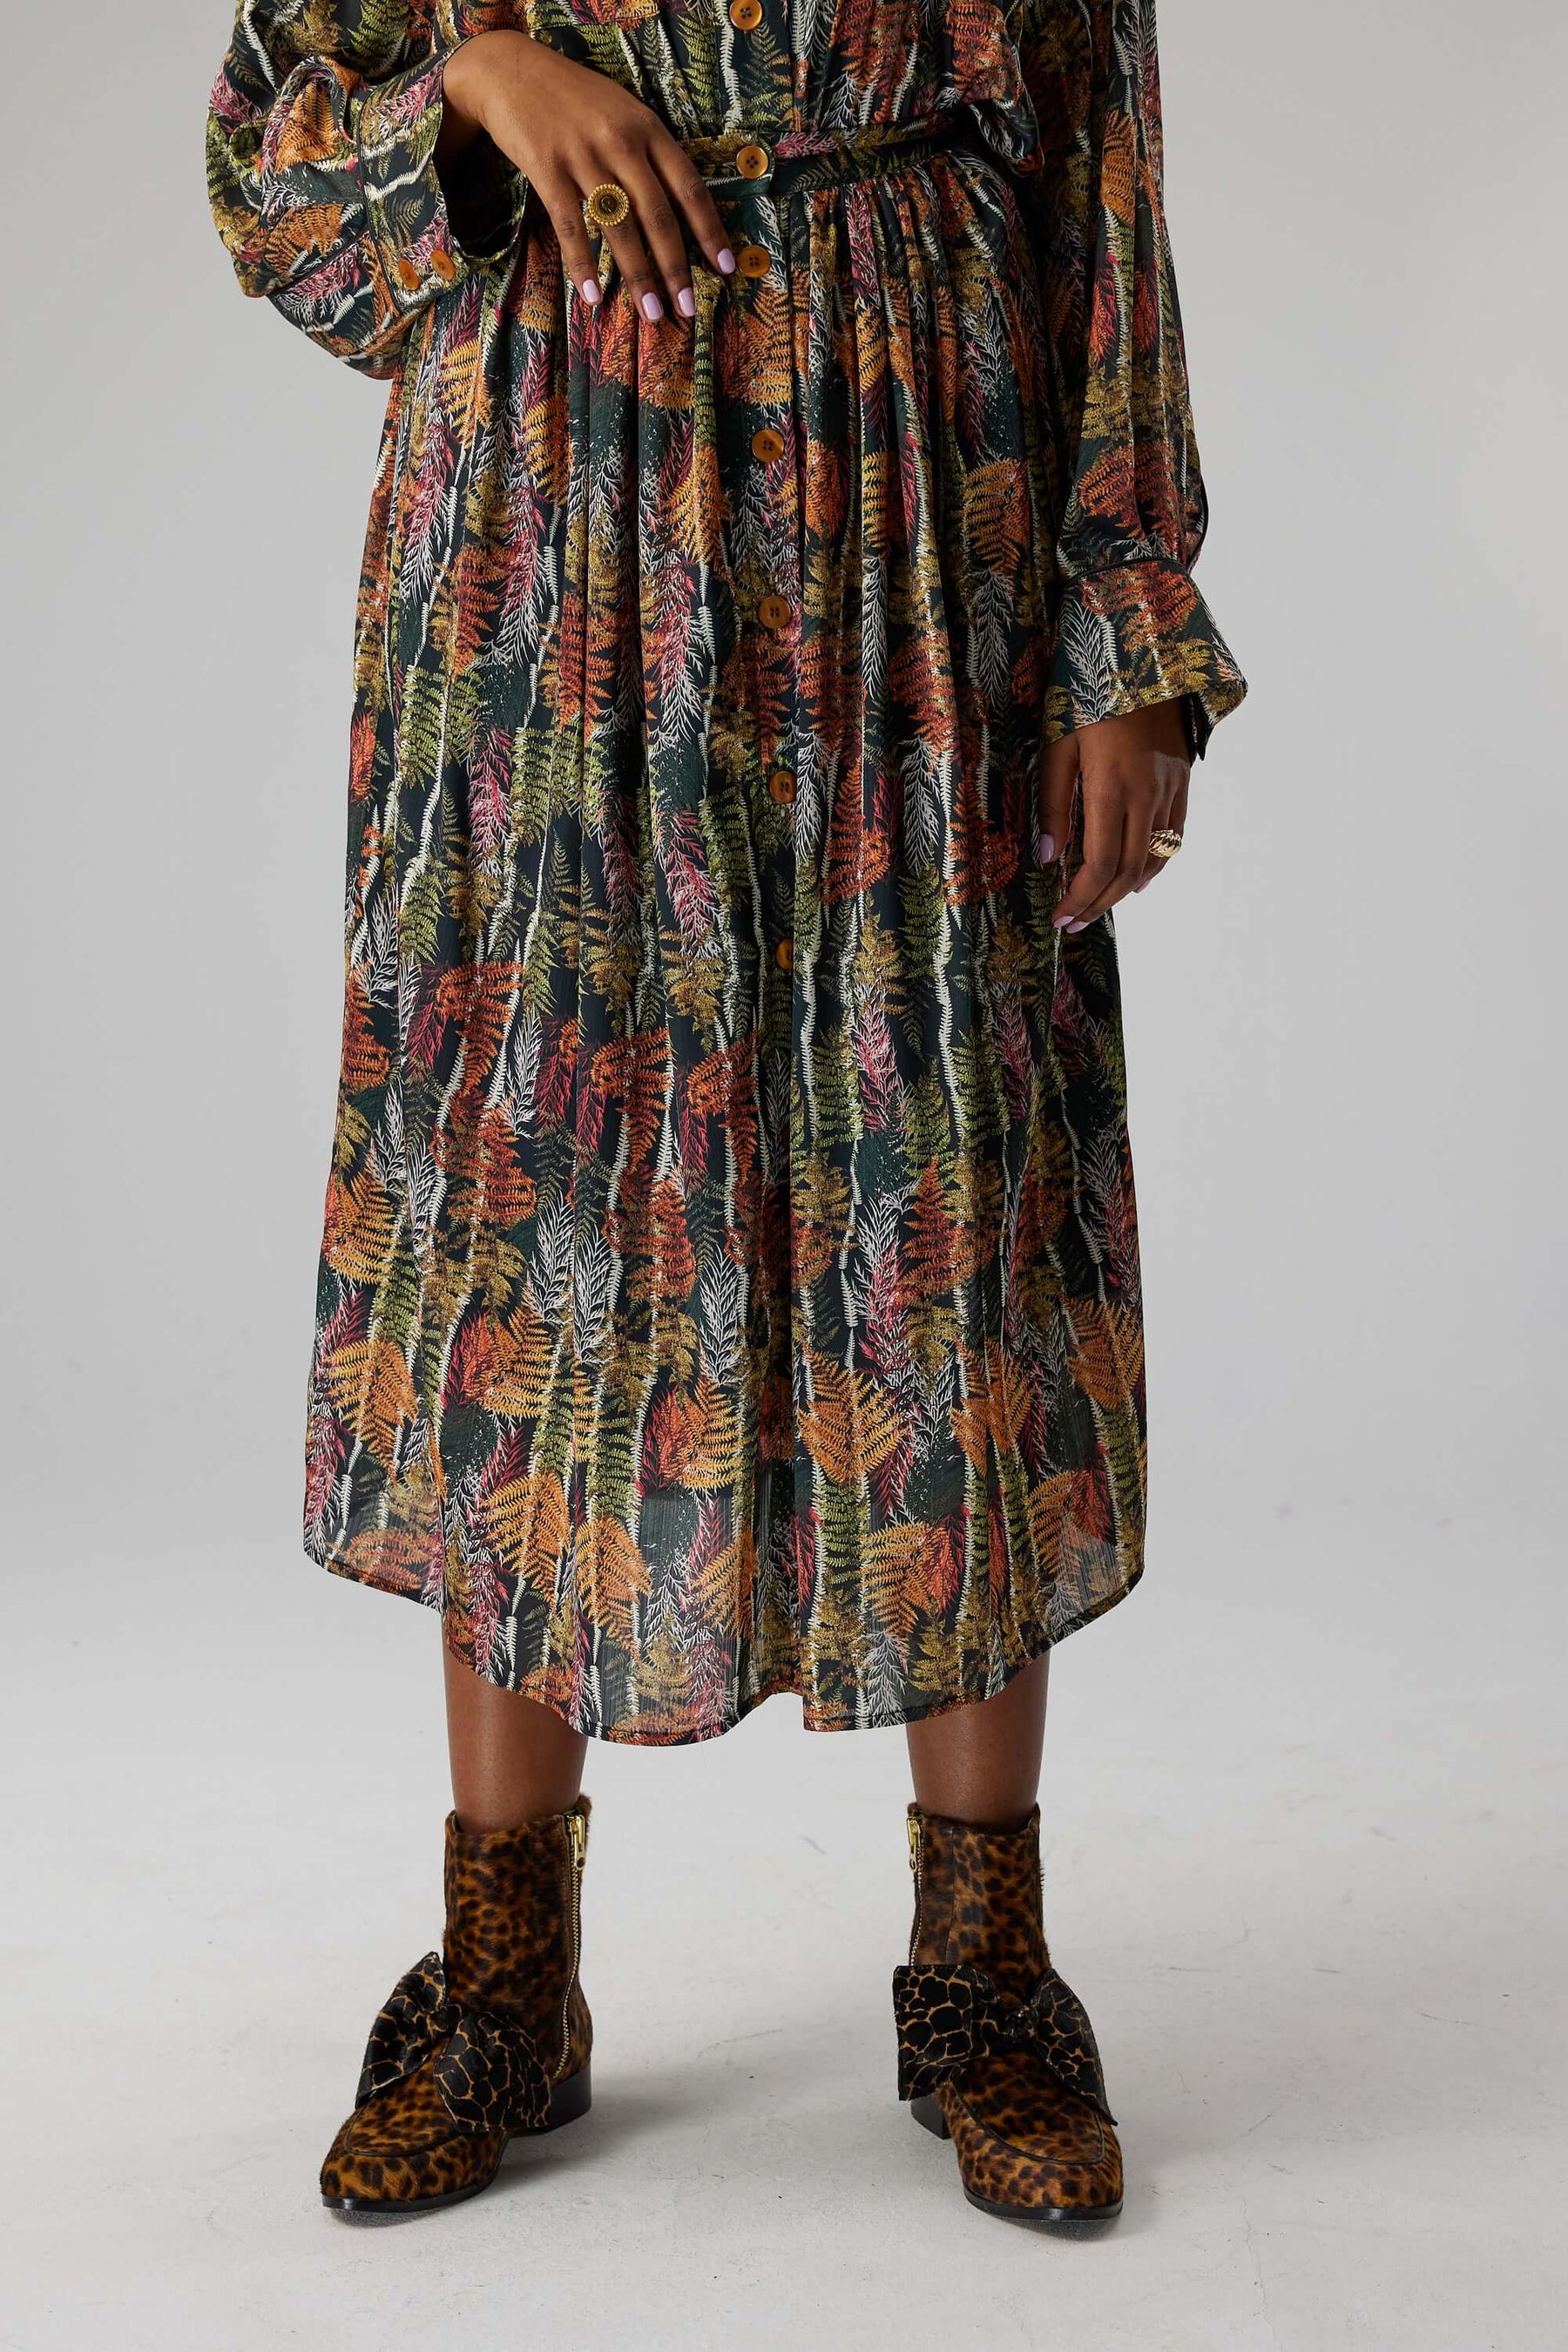 Orso skirt in Fern print